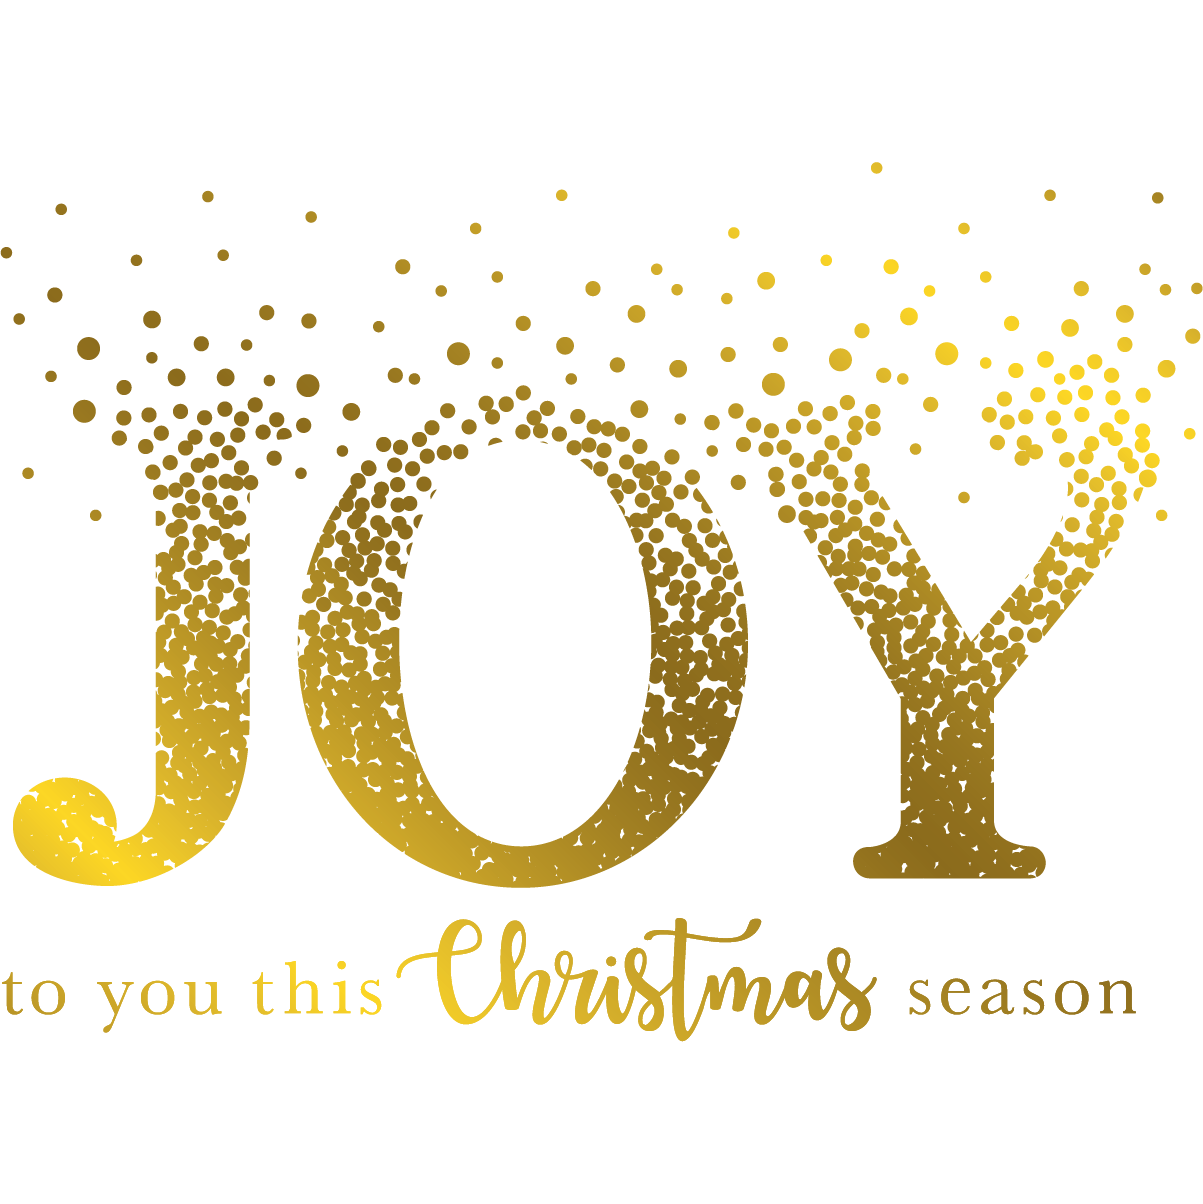 Joy Christmas Free HQ Image PNG Image